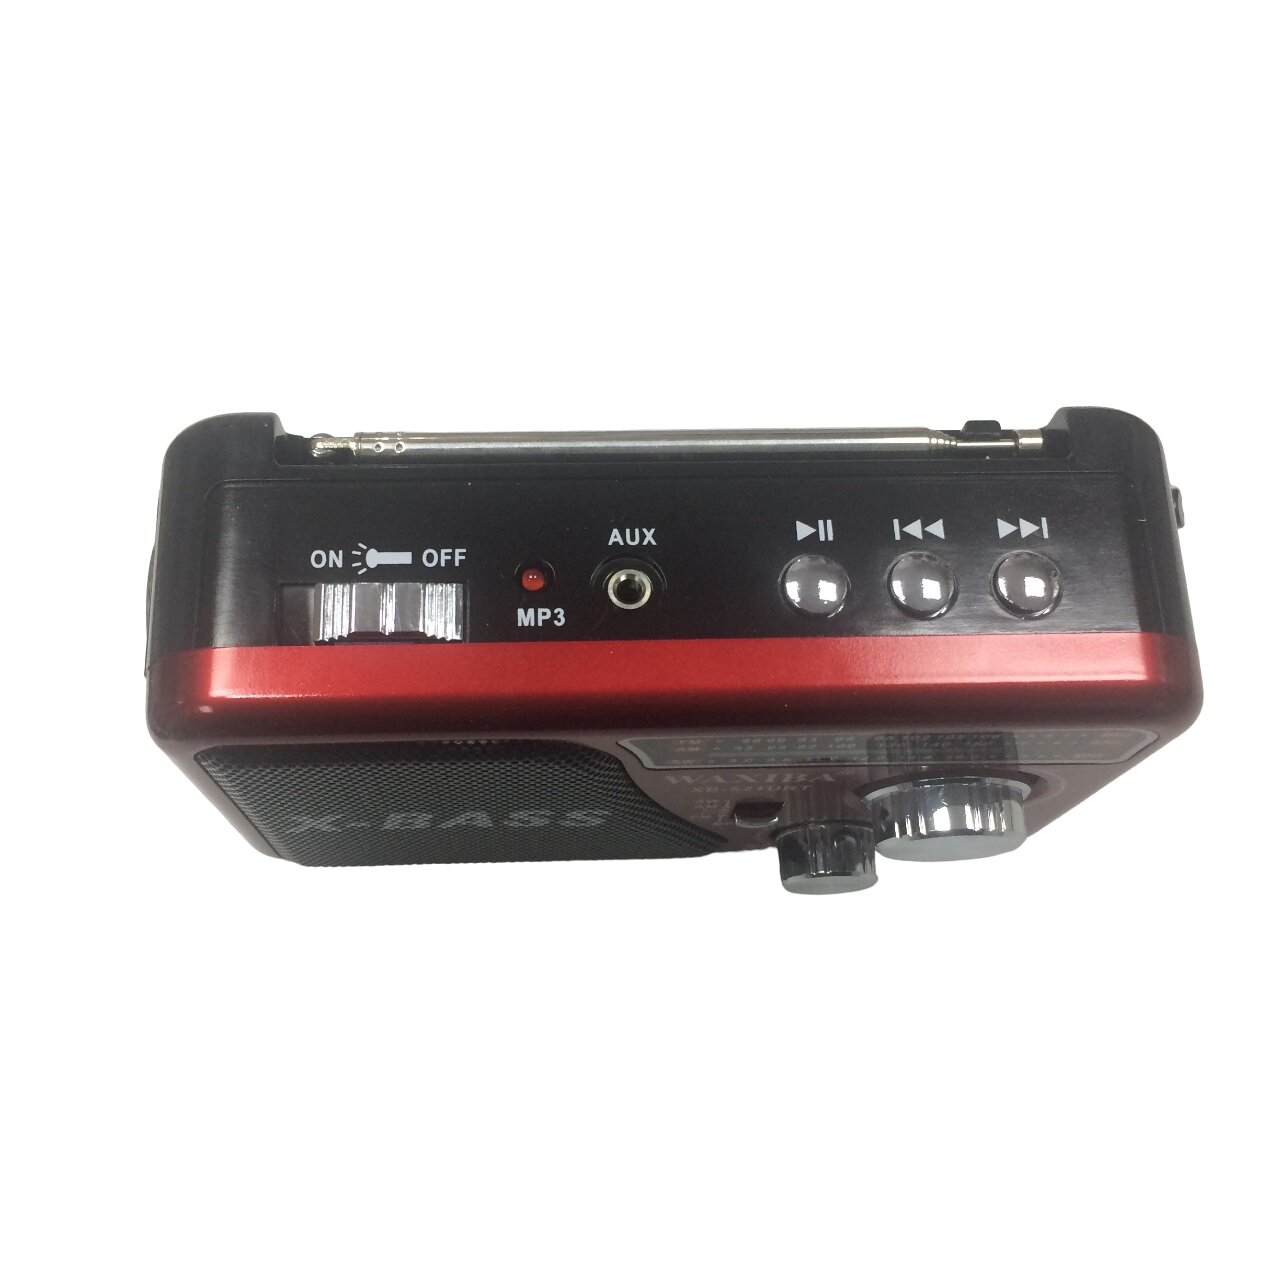 Радиоприемник аккумуляторный WAXIBA с фонарем, FM, USB и SD картой